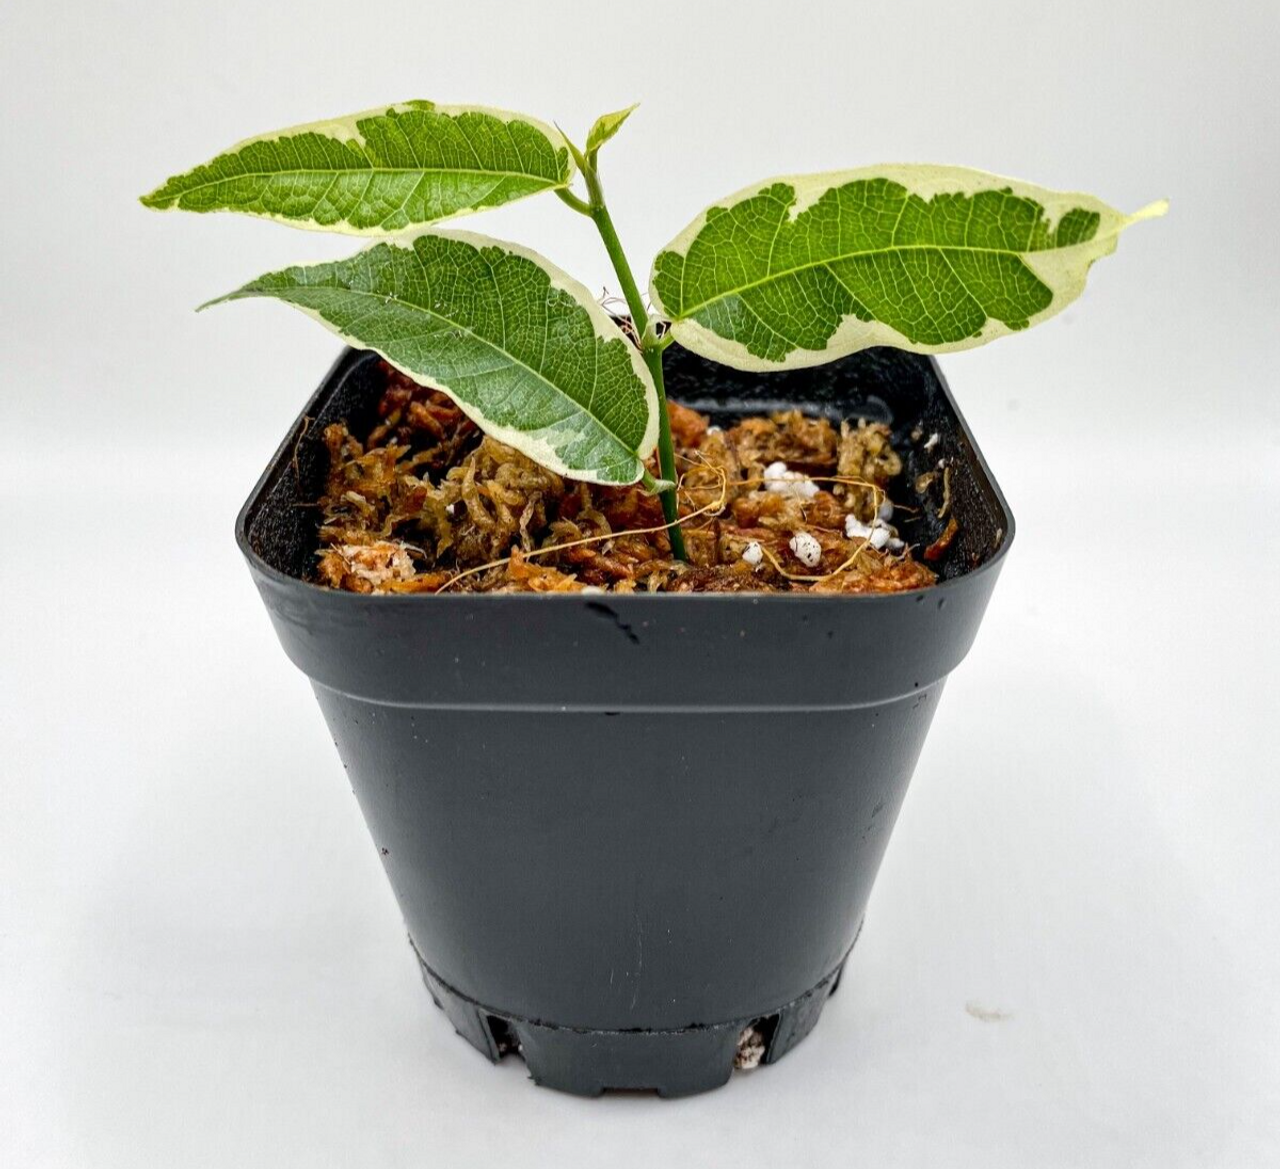 Ficus radicans 'Variegata' (2.5") /Creeping Fig / Terrarium Plant / Houseplant